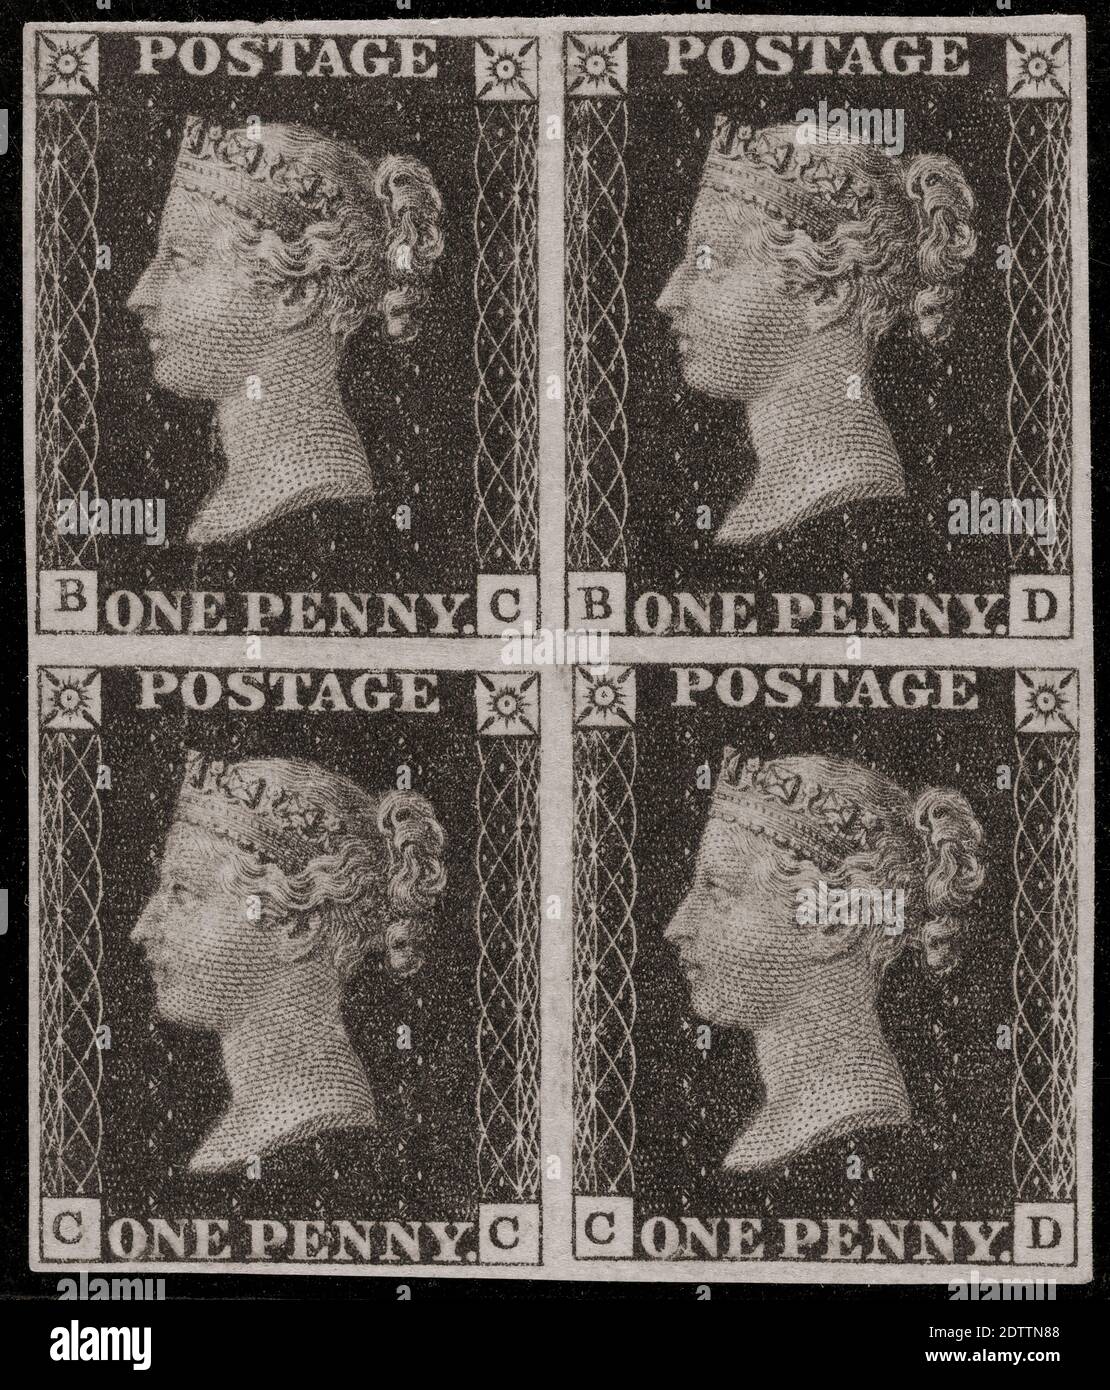 Un bloque de cuatro sellos de franqueo Penny Black. El Penny Black fue el primer sello de correo adhesivo del mundo. El sello, con un retrato de la Reina Victoria, fue publicado el 1 de mayo de 1840. Foto de stock